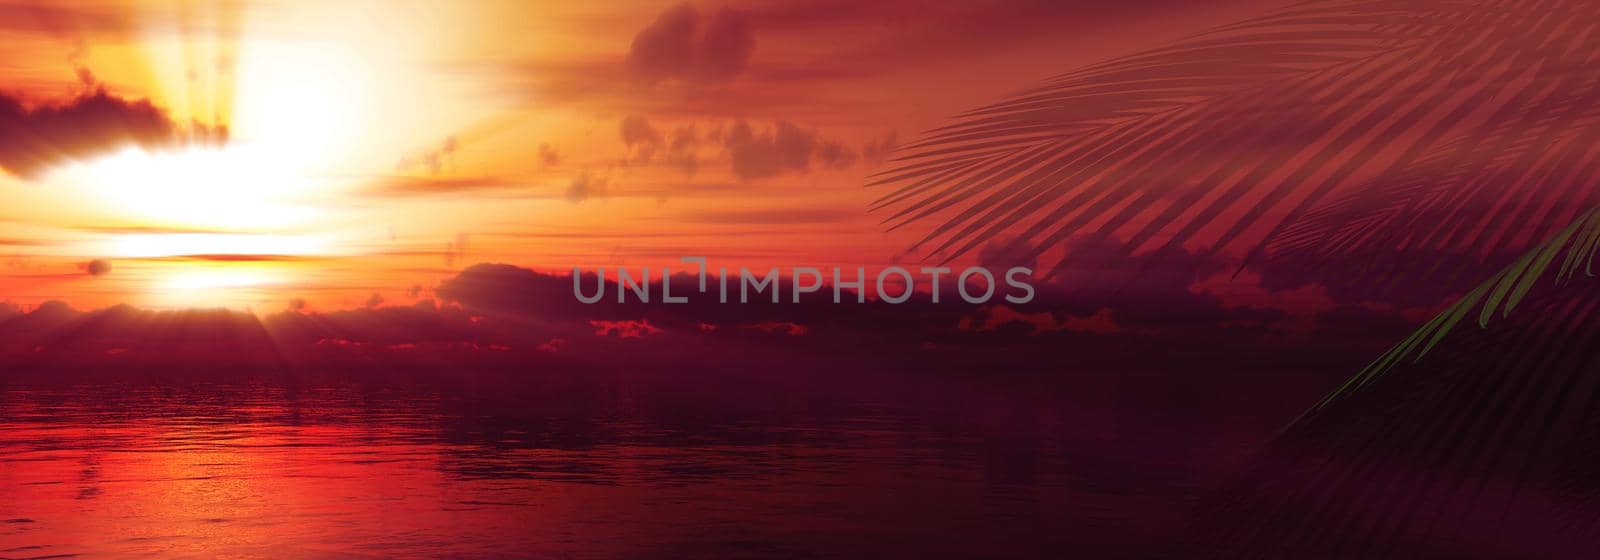 sunset sea palm landscape illustration by alex_nako